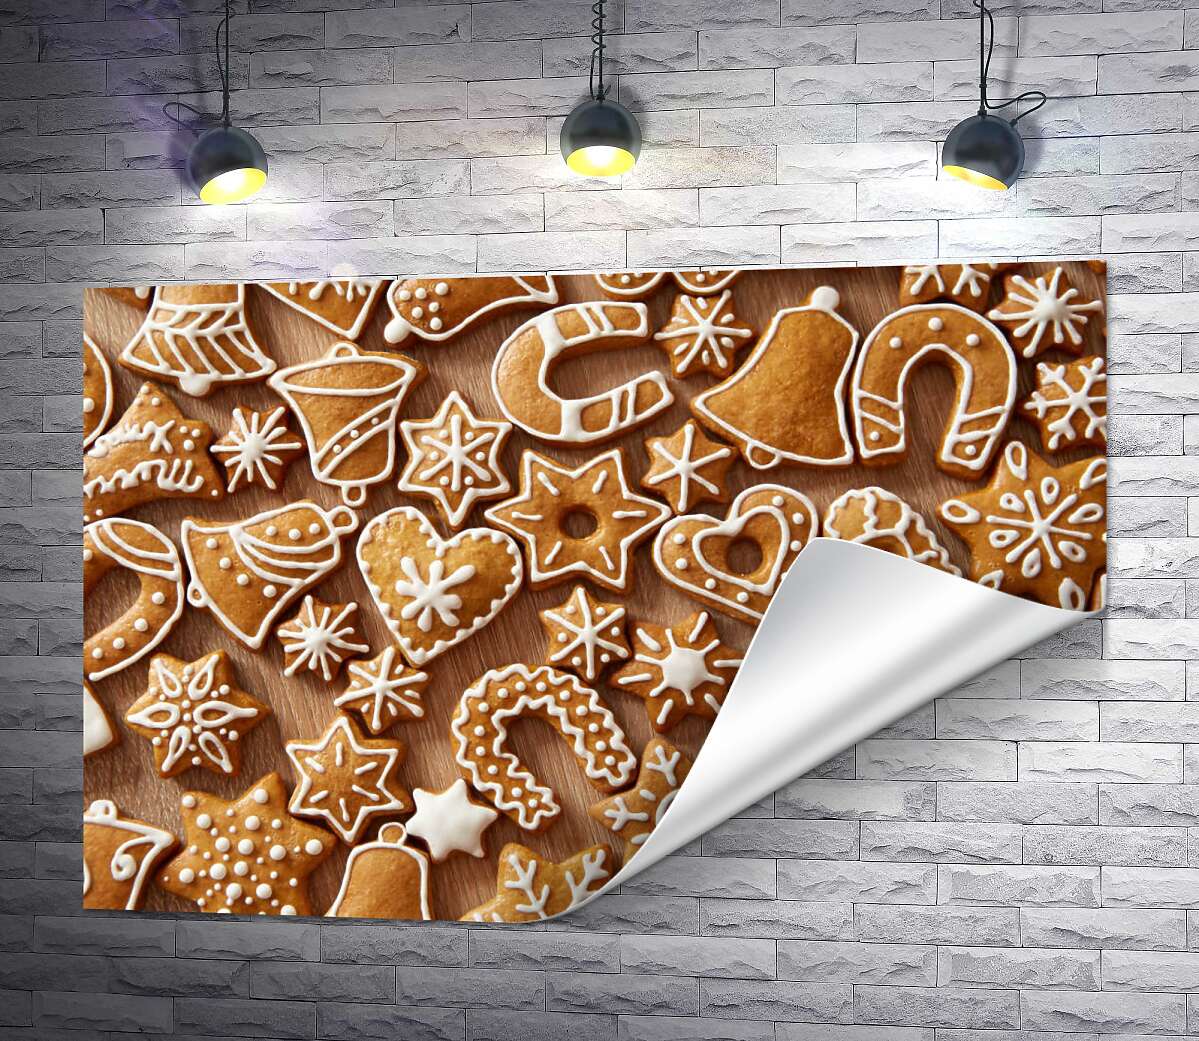 друк Різдвяний орнамент імбирного печива